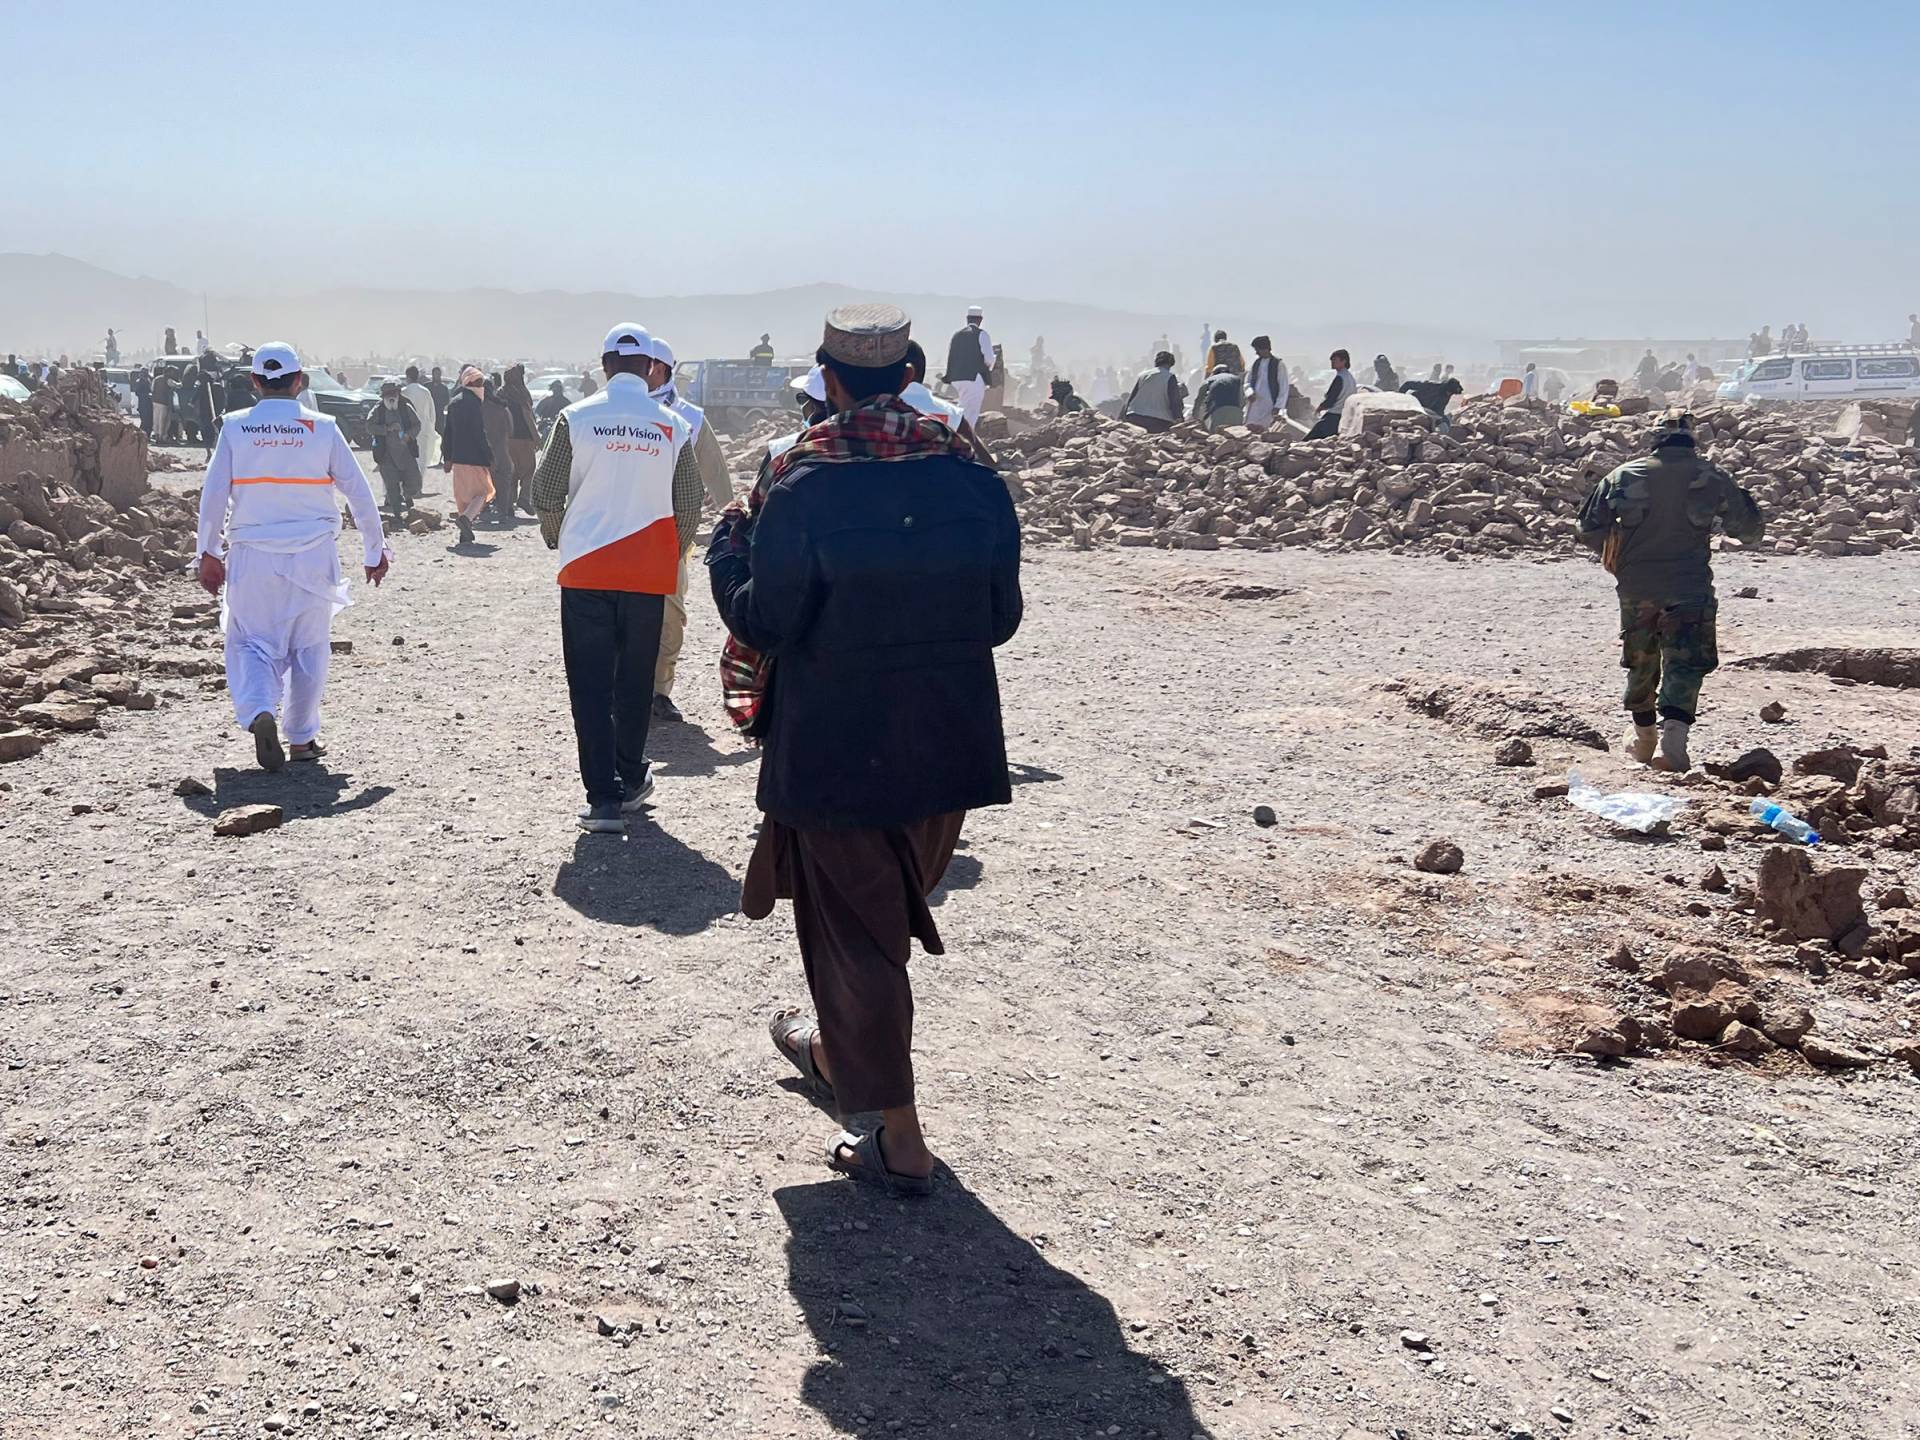 阿富汗世界展望會距離震央僅40公里，多位工作人員同為受創角色，卻仍穿上救援背心，深入災區第一時間提供援助。